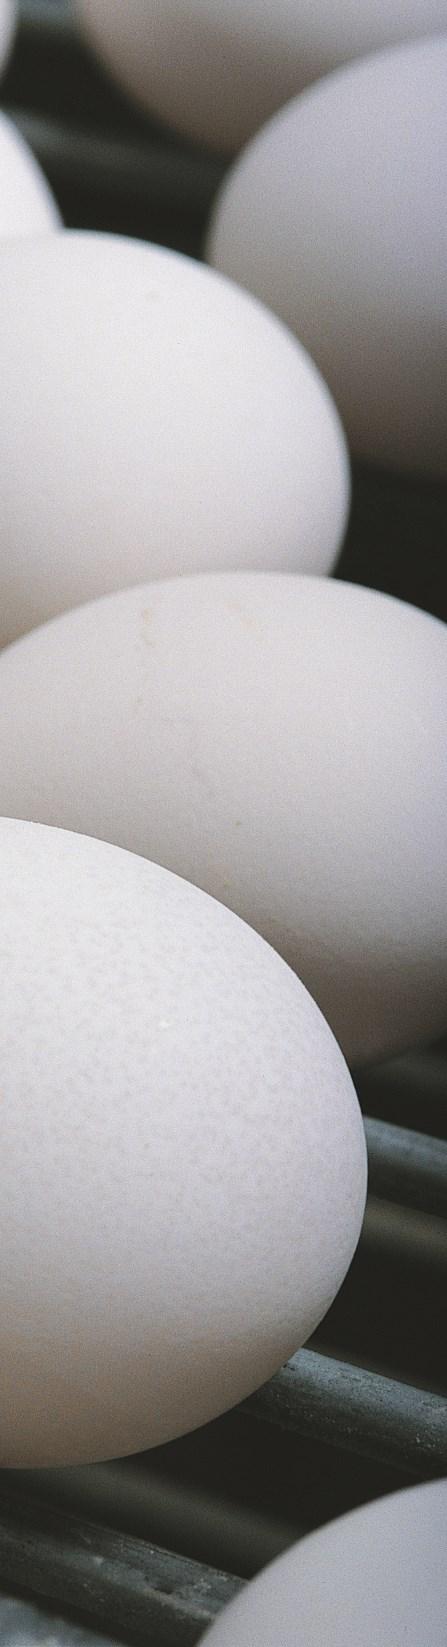 Hatching Egg Imports Trade Partners 1 United States 59,209,760 64,323,679 65,918,221 67,713,651 41,063,089 2 China 28,748 235,029 261,319 256,736